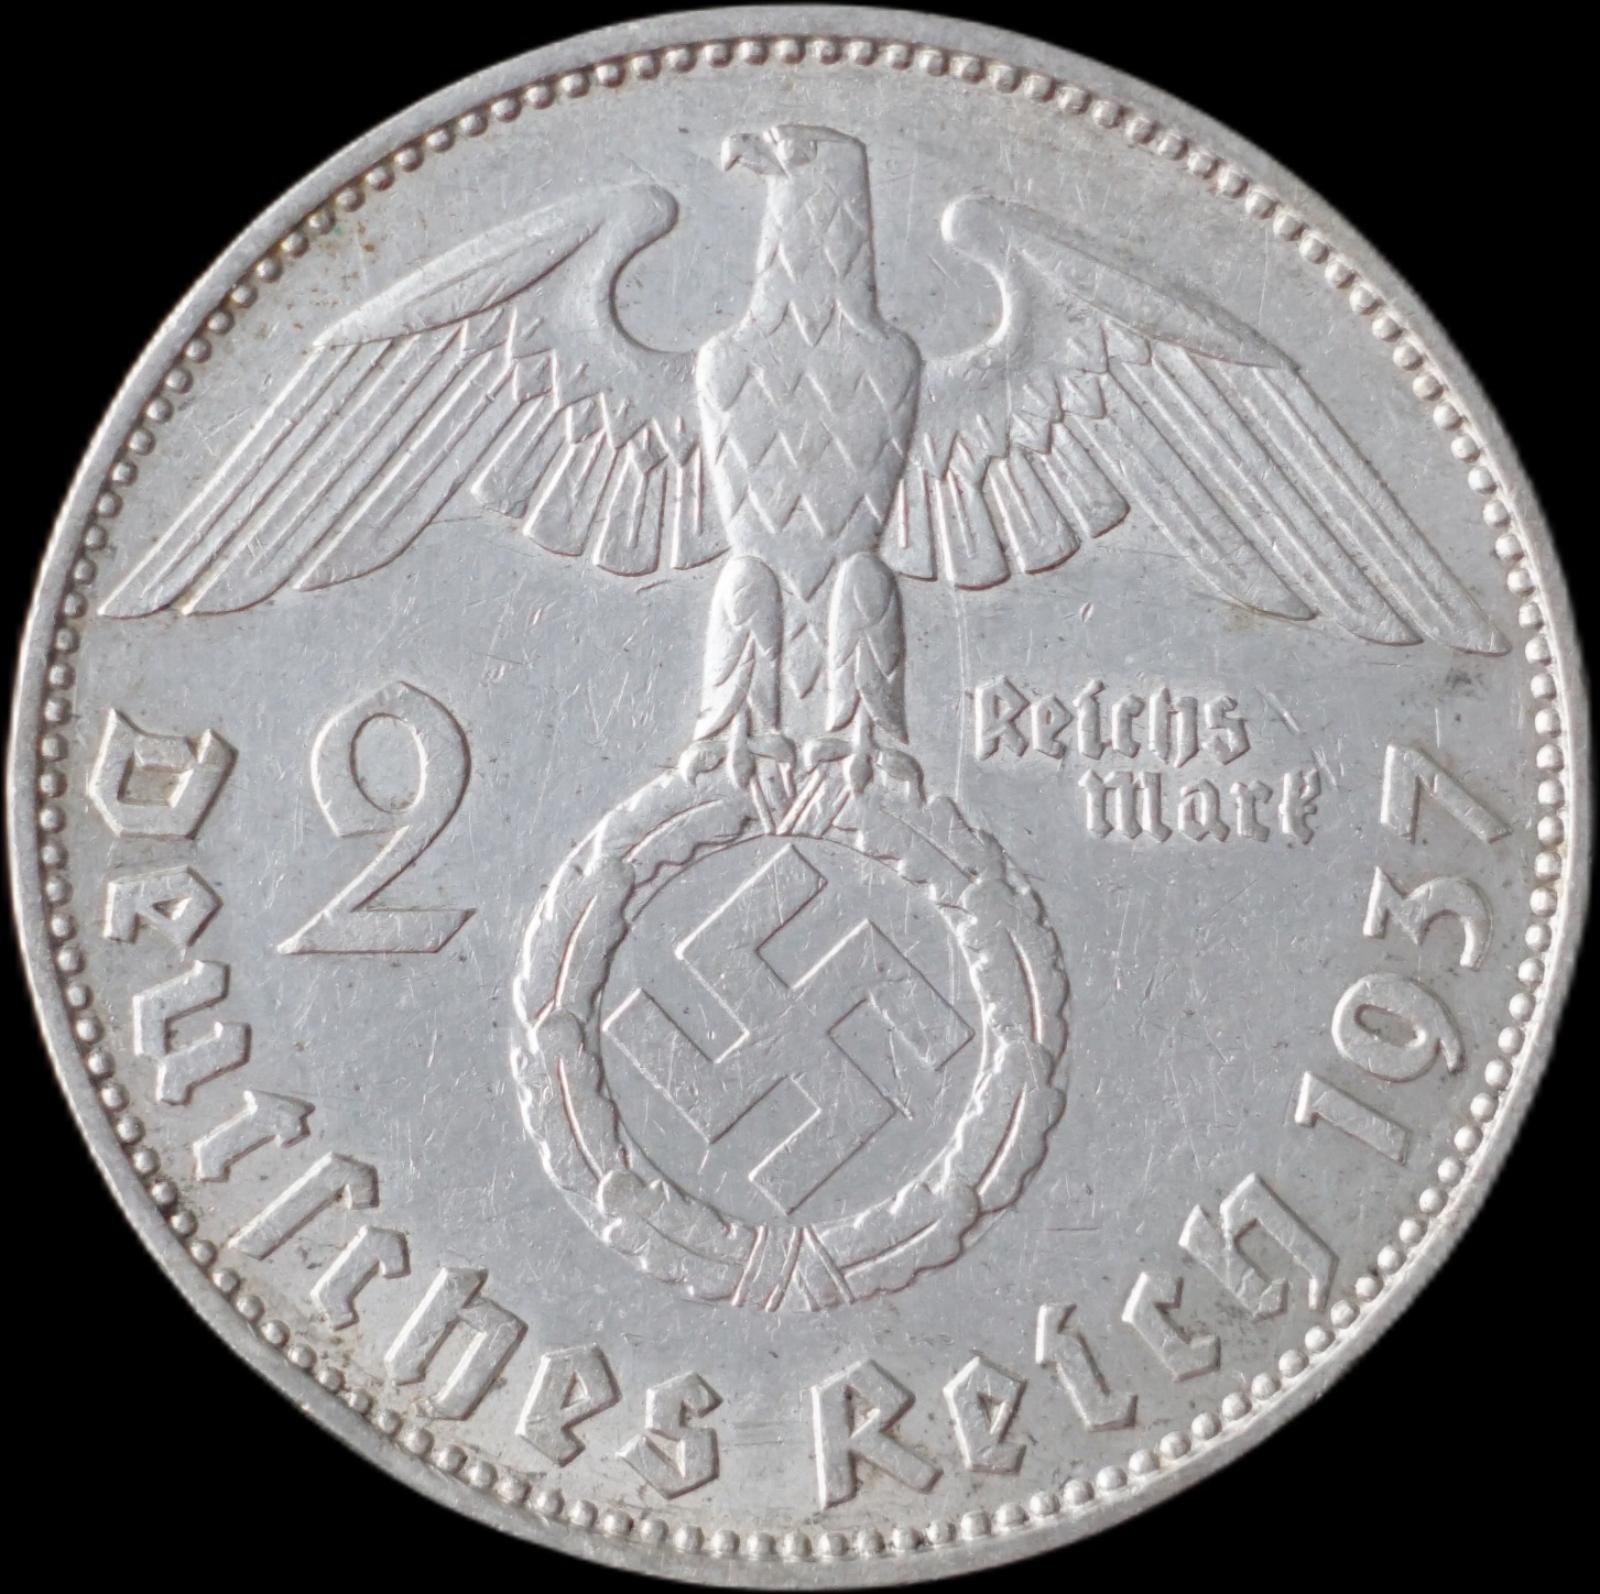 Nemecko - 2 Marka 1937 J Hindenburg - strieborná minca - Numizmatika